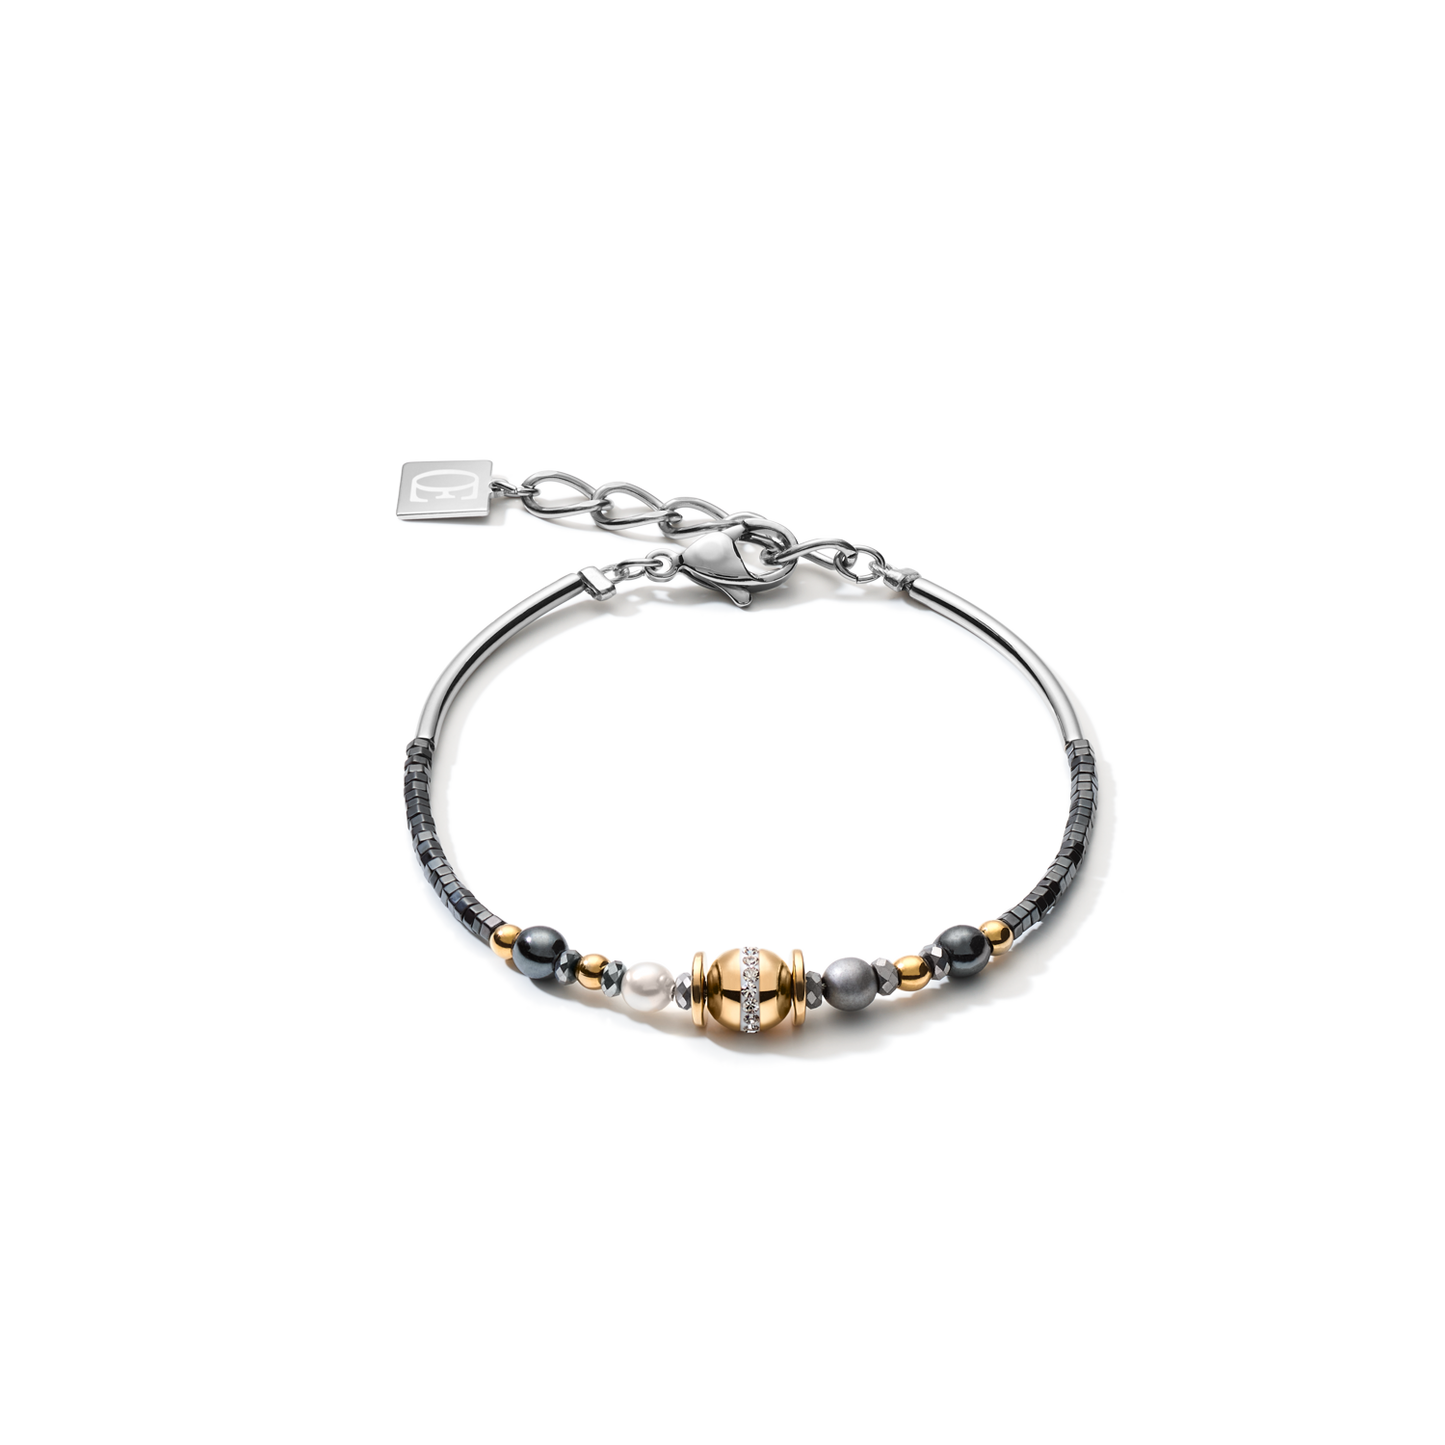 Coeur de Lion Bracelet 5049301216 Gemstones & Crystal Pearls